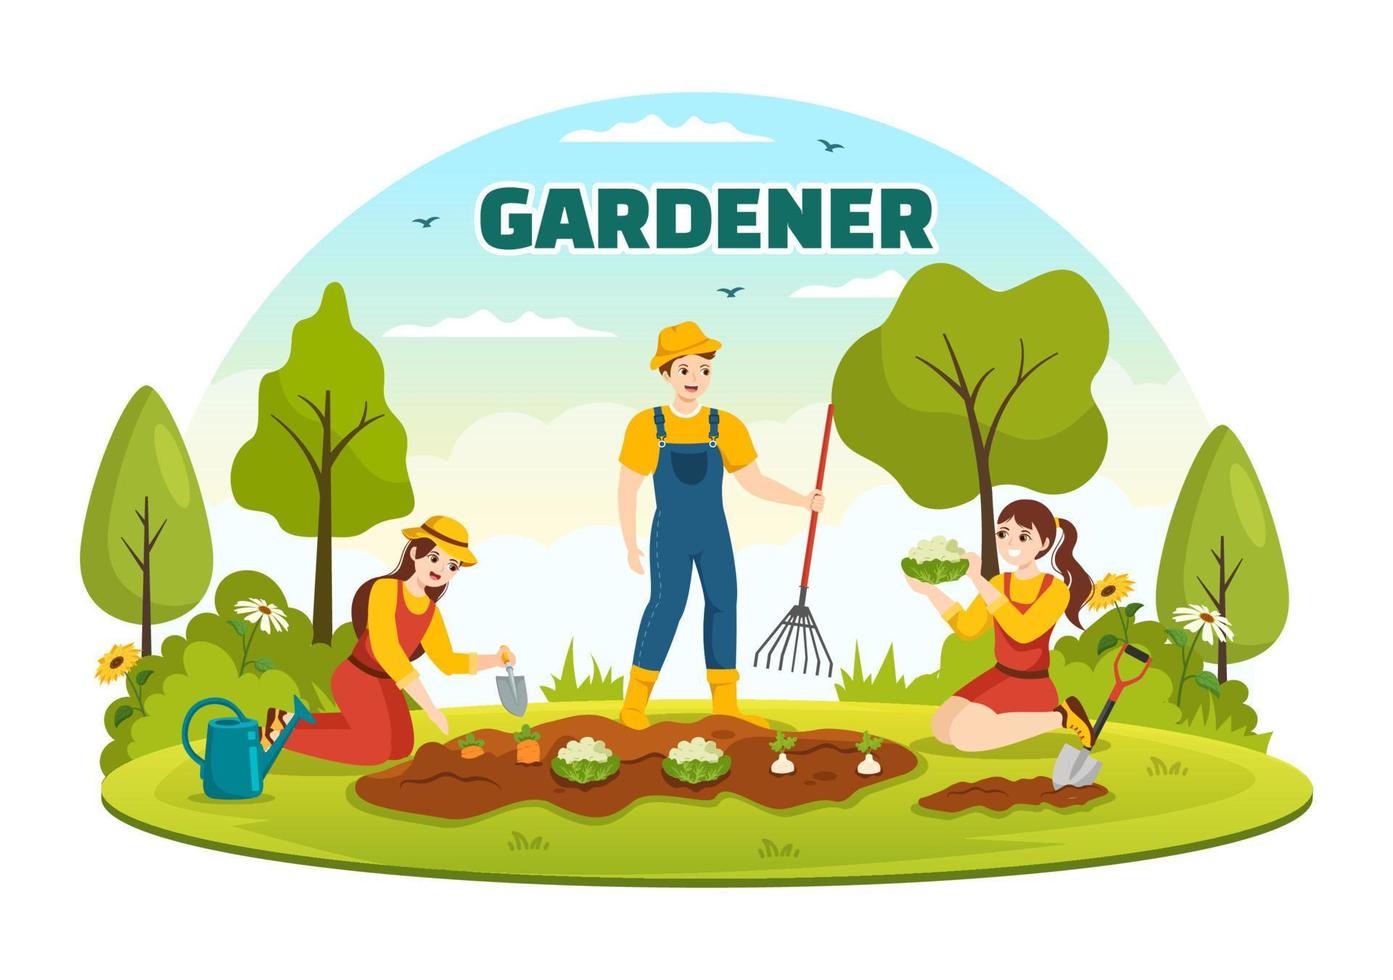 Gärtner Illustration mit Garten Werkzeug, Landwirtschaft, wächst Gemüse im botanisch Sommer- Gartenarbeit eben Karikatur Hand gezeichnet zum Landung Seite Vorlagen vektor